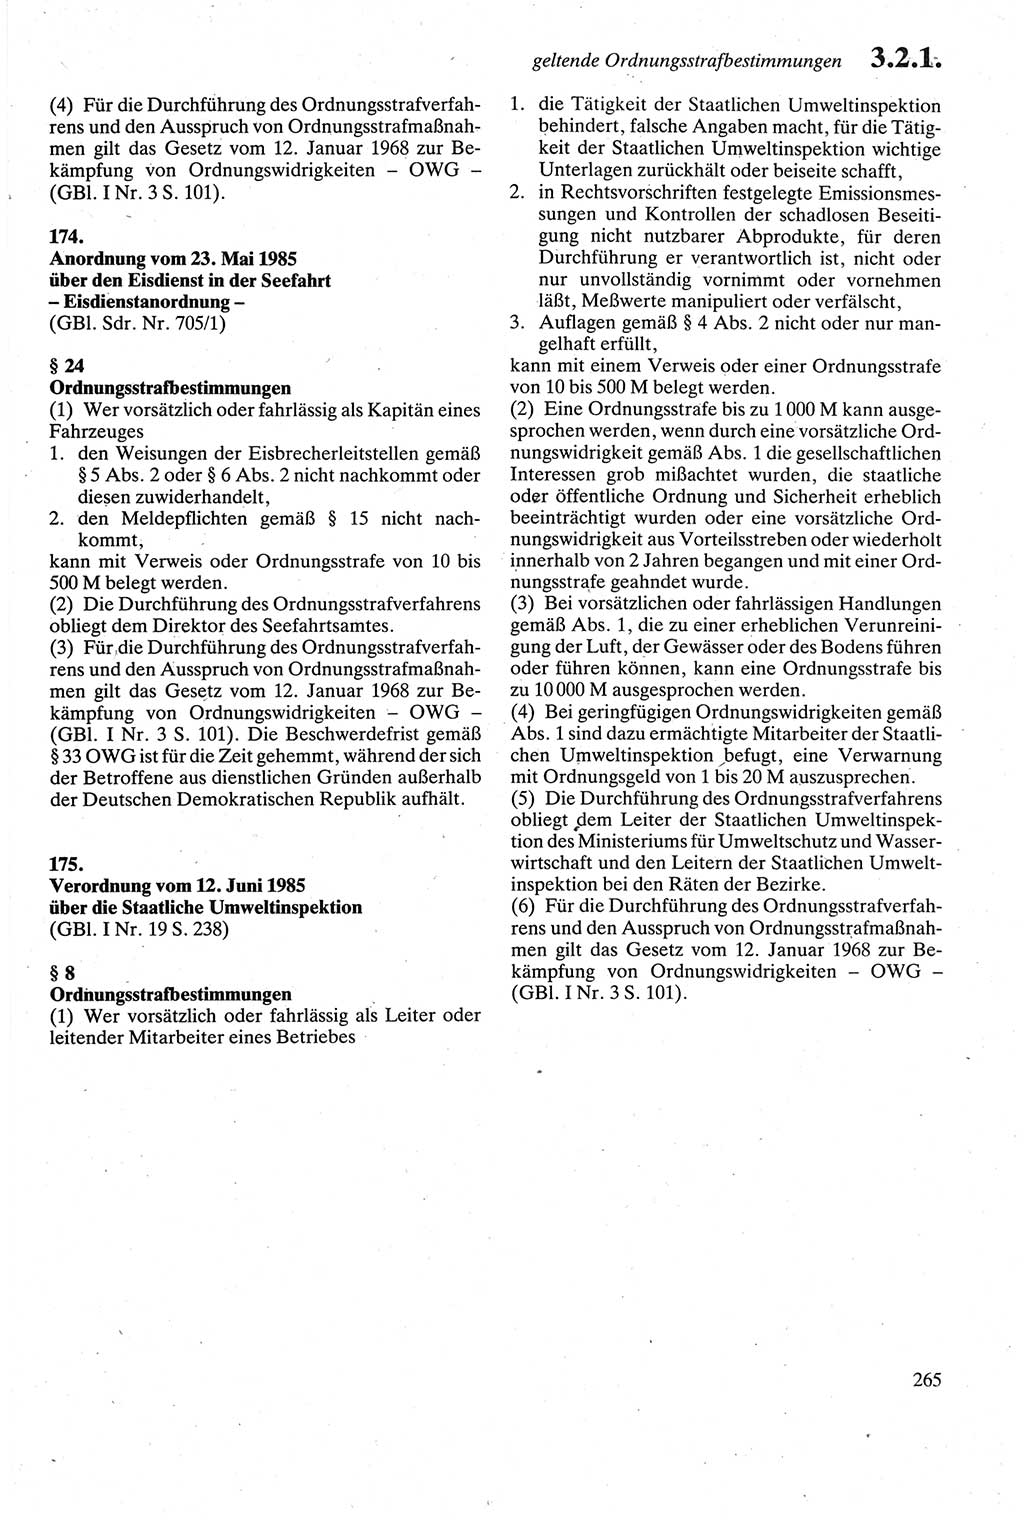 Strafgesetzbuch (StGB) der Deutschen Demokratischen Republik (DDR) sowie angrenzende Gesetze und Bestimmungen 1979, Seite 265 (StGB DDR Ges. Best. 1979, S. 265)